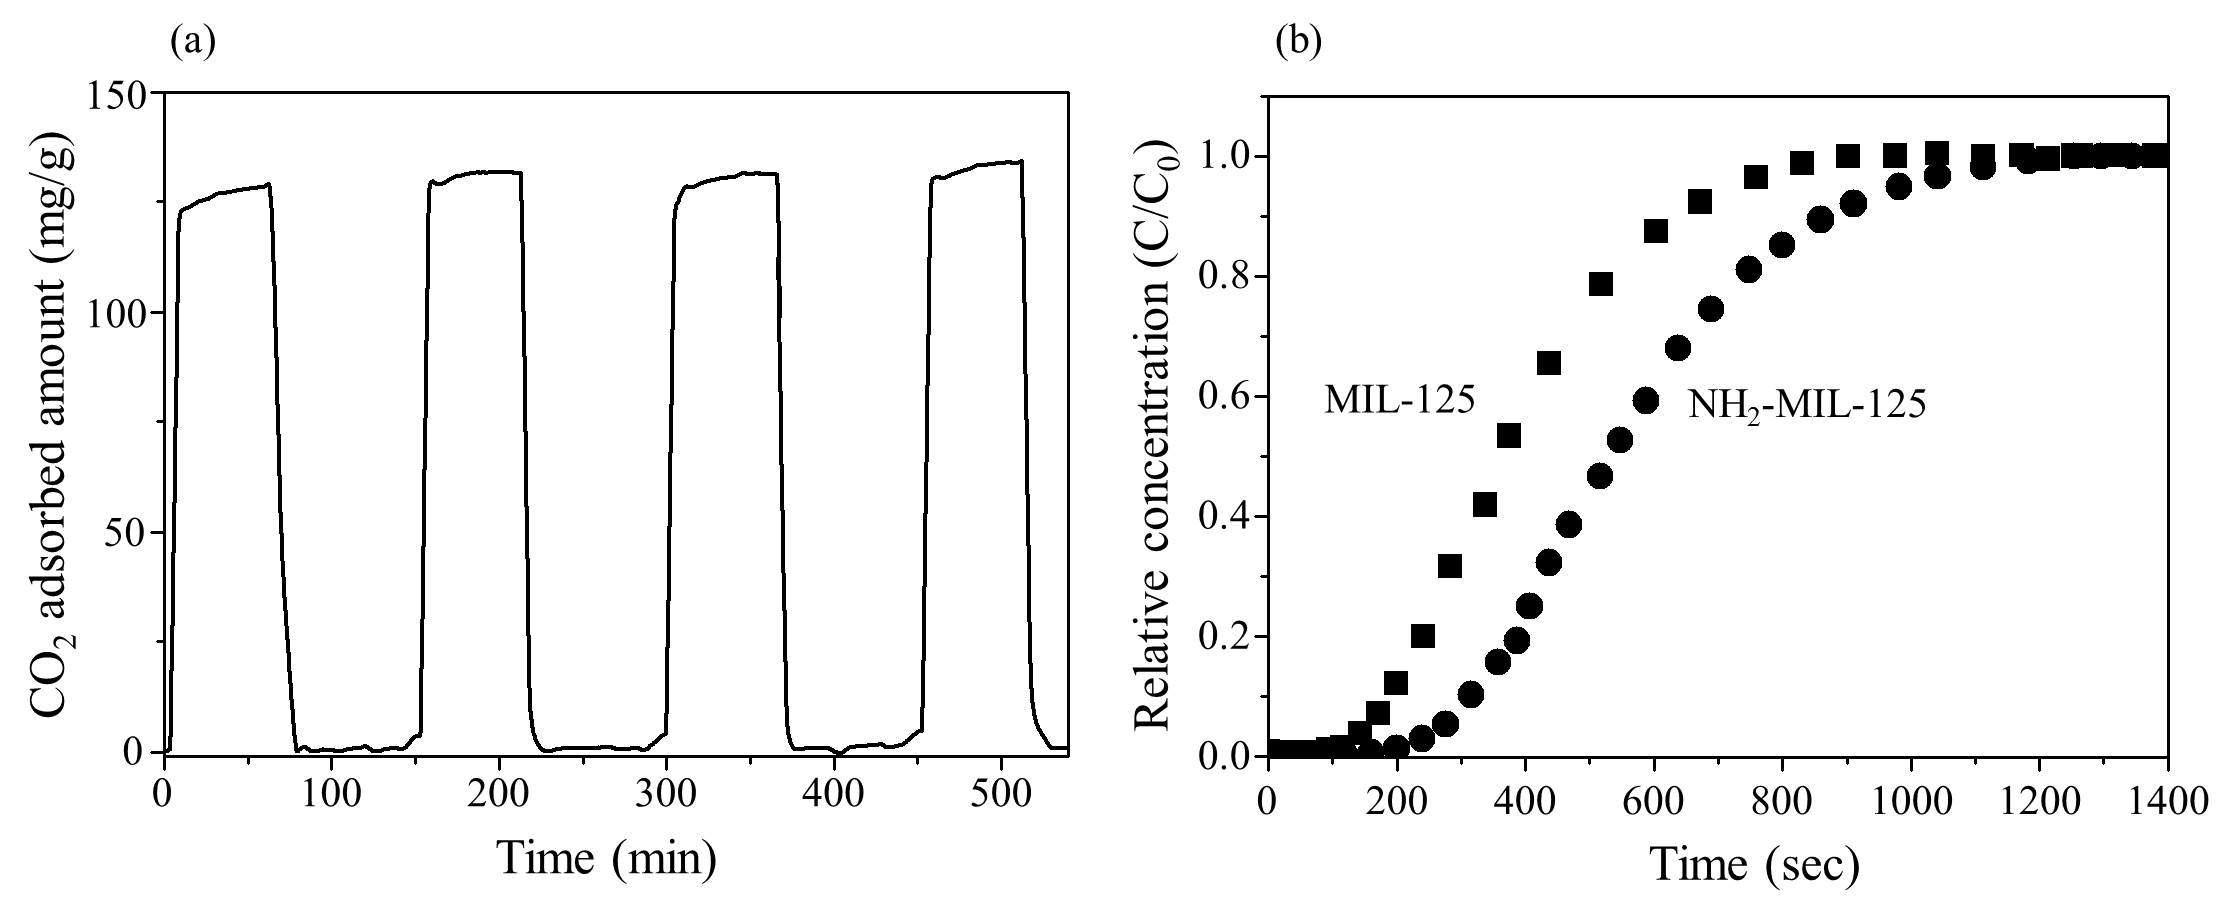 (a) NH2-MIL-125 물질의 이산화탄소 흡탈착 반복실험 결과 및 (b) MIL-125, NH2-MIL-125 두 물질의 이산화탄소 흡착 파과 실험 결과.